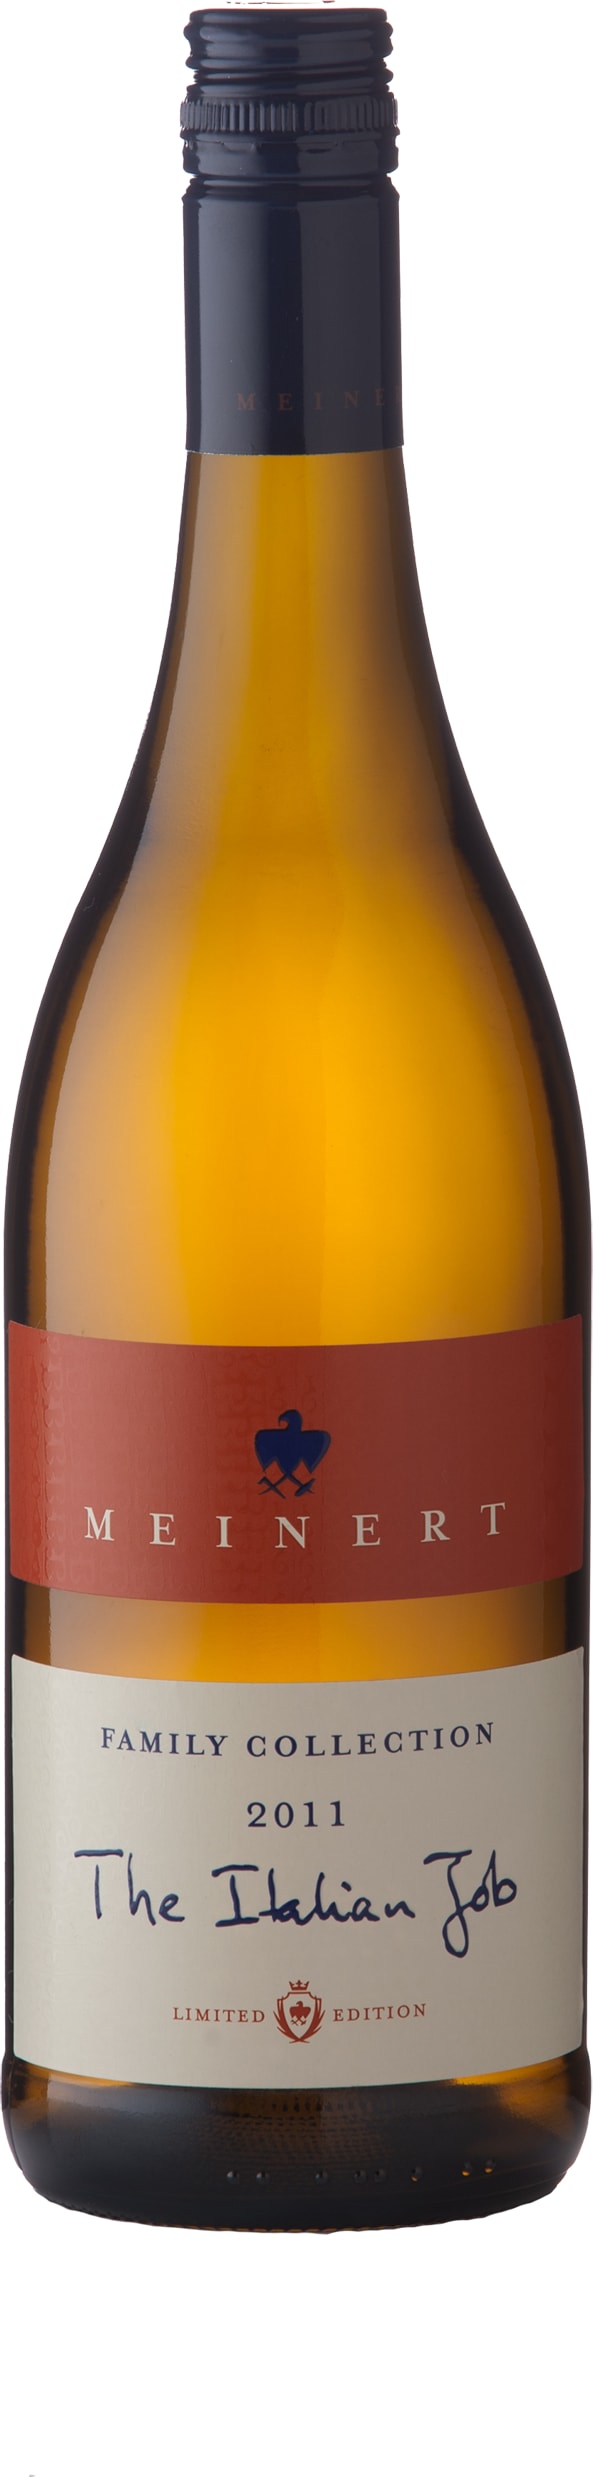 Meinert White Merlot 'The Italian Job' 2019 75cl - Buy Meinert Wines from GREAT WINES DIRECT wine shop